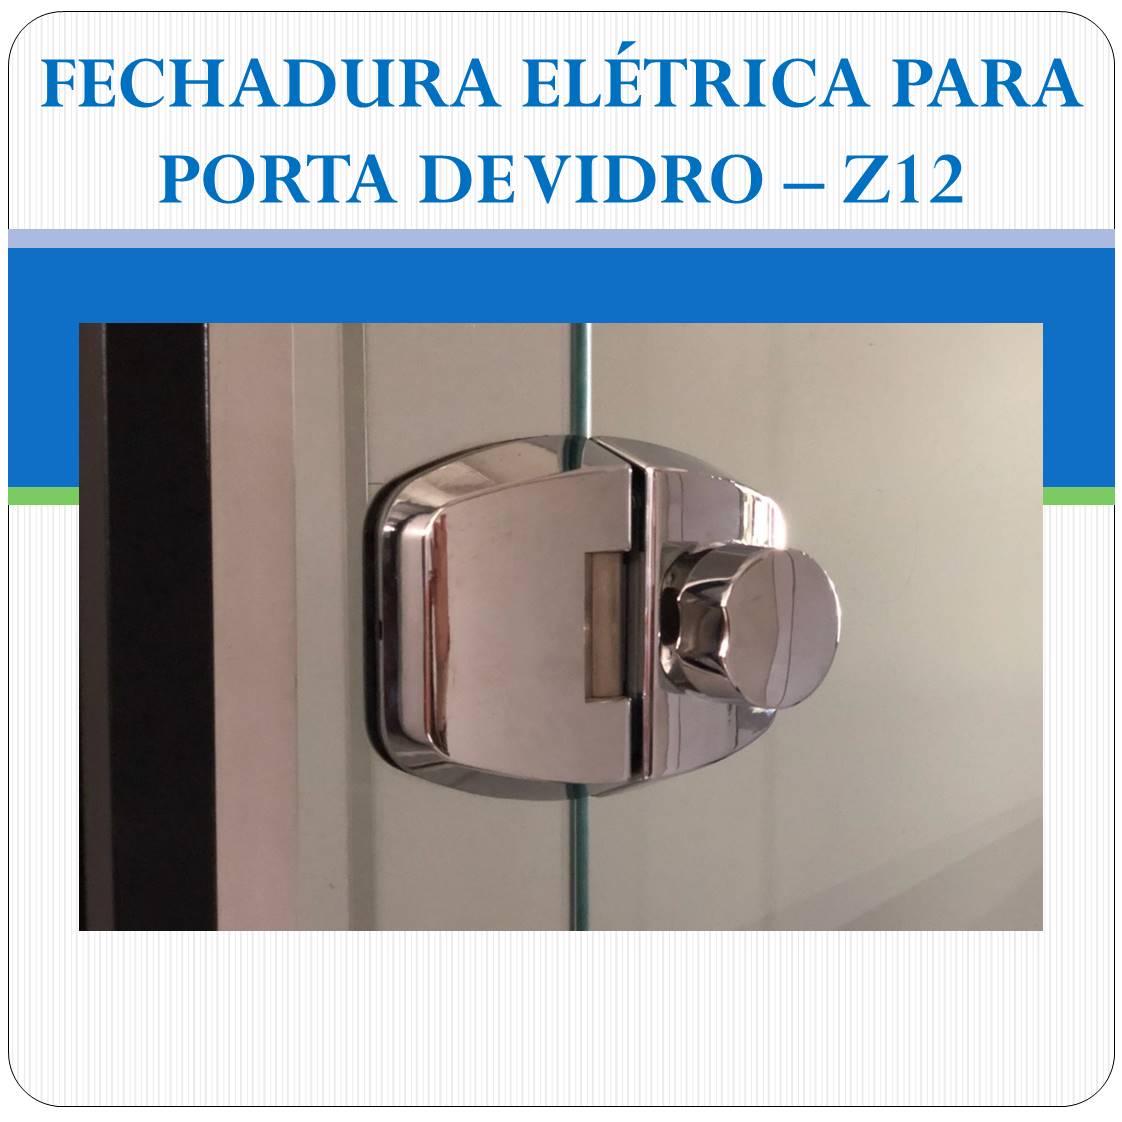 Fechadura Eletrica Porta de Vidro - Z-12F